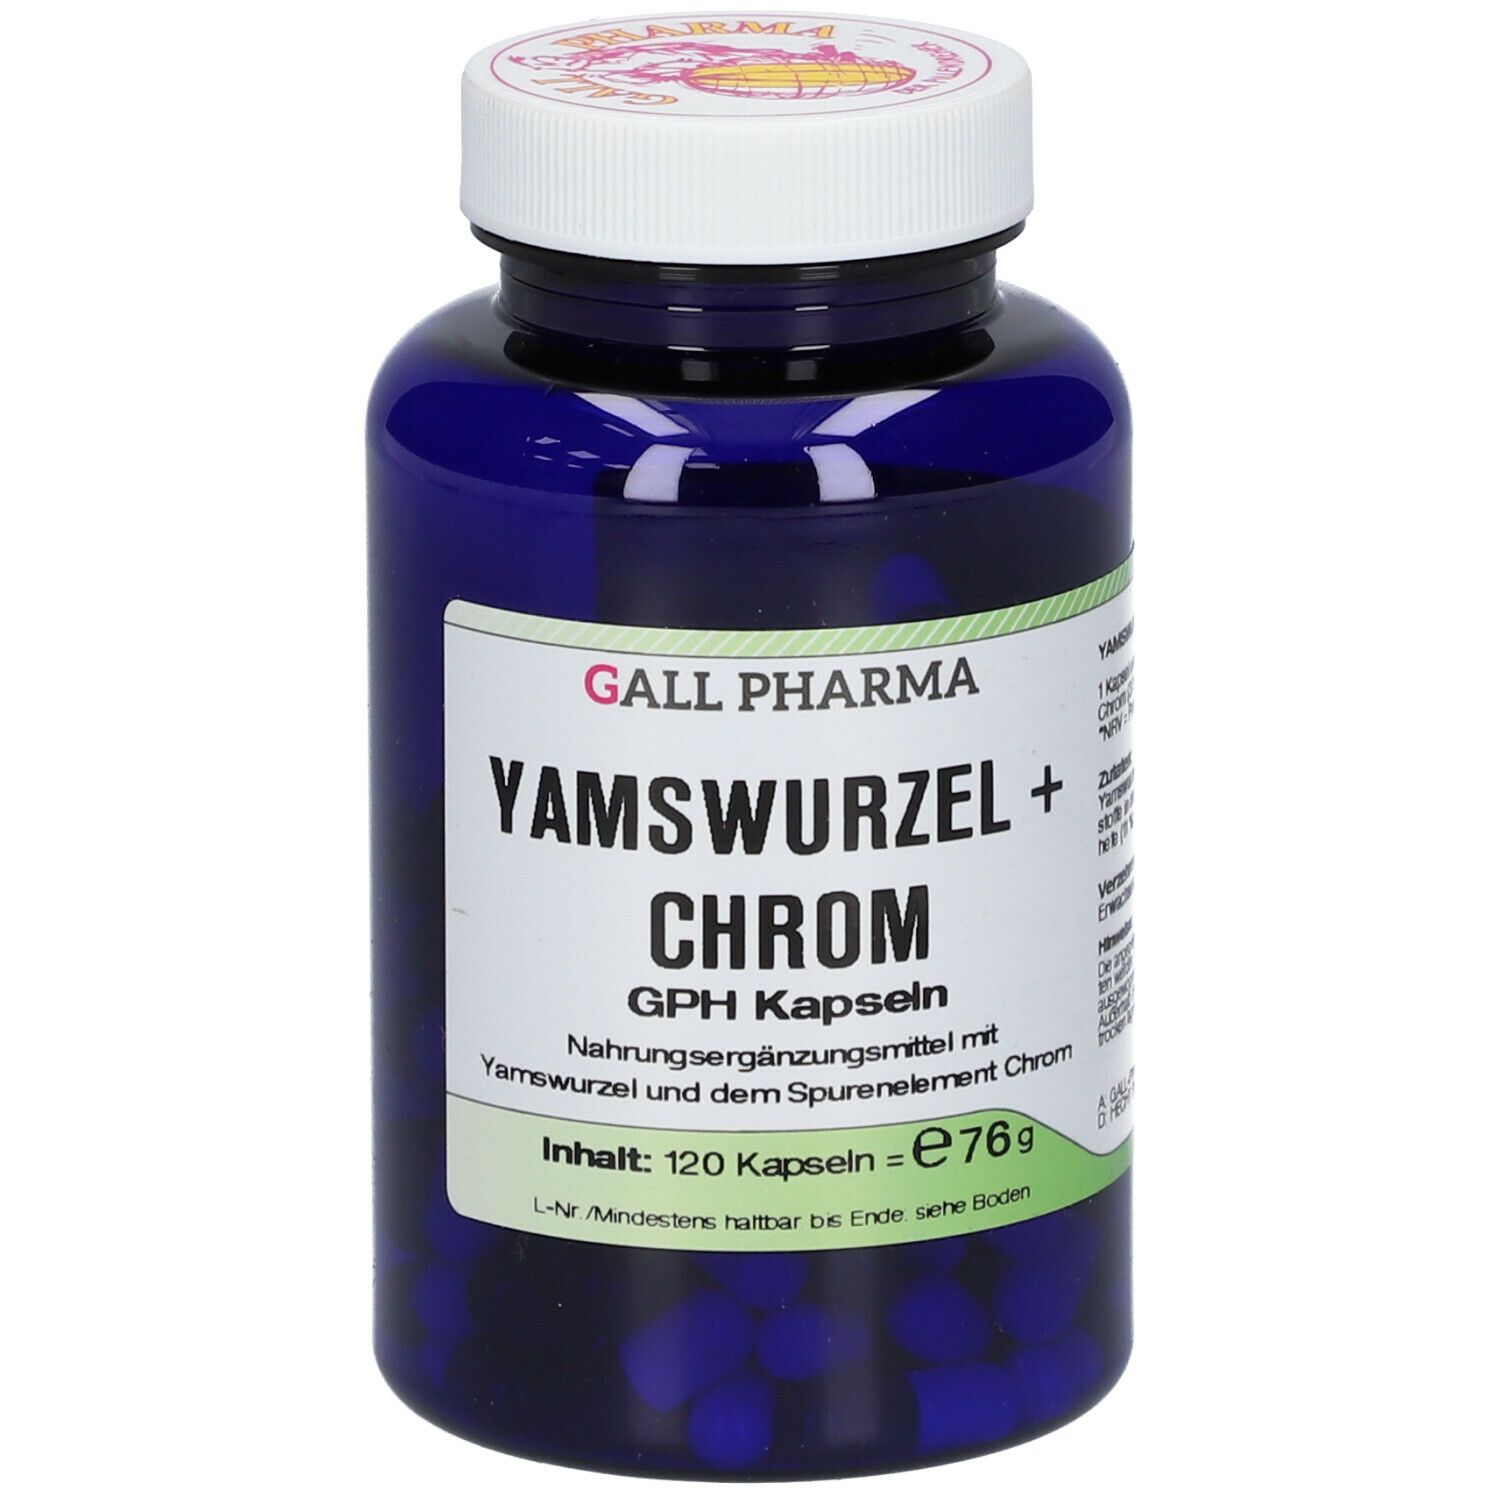 GALL PHARMA Yamswurzel + Chrom GPH